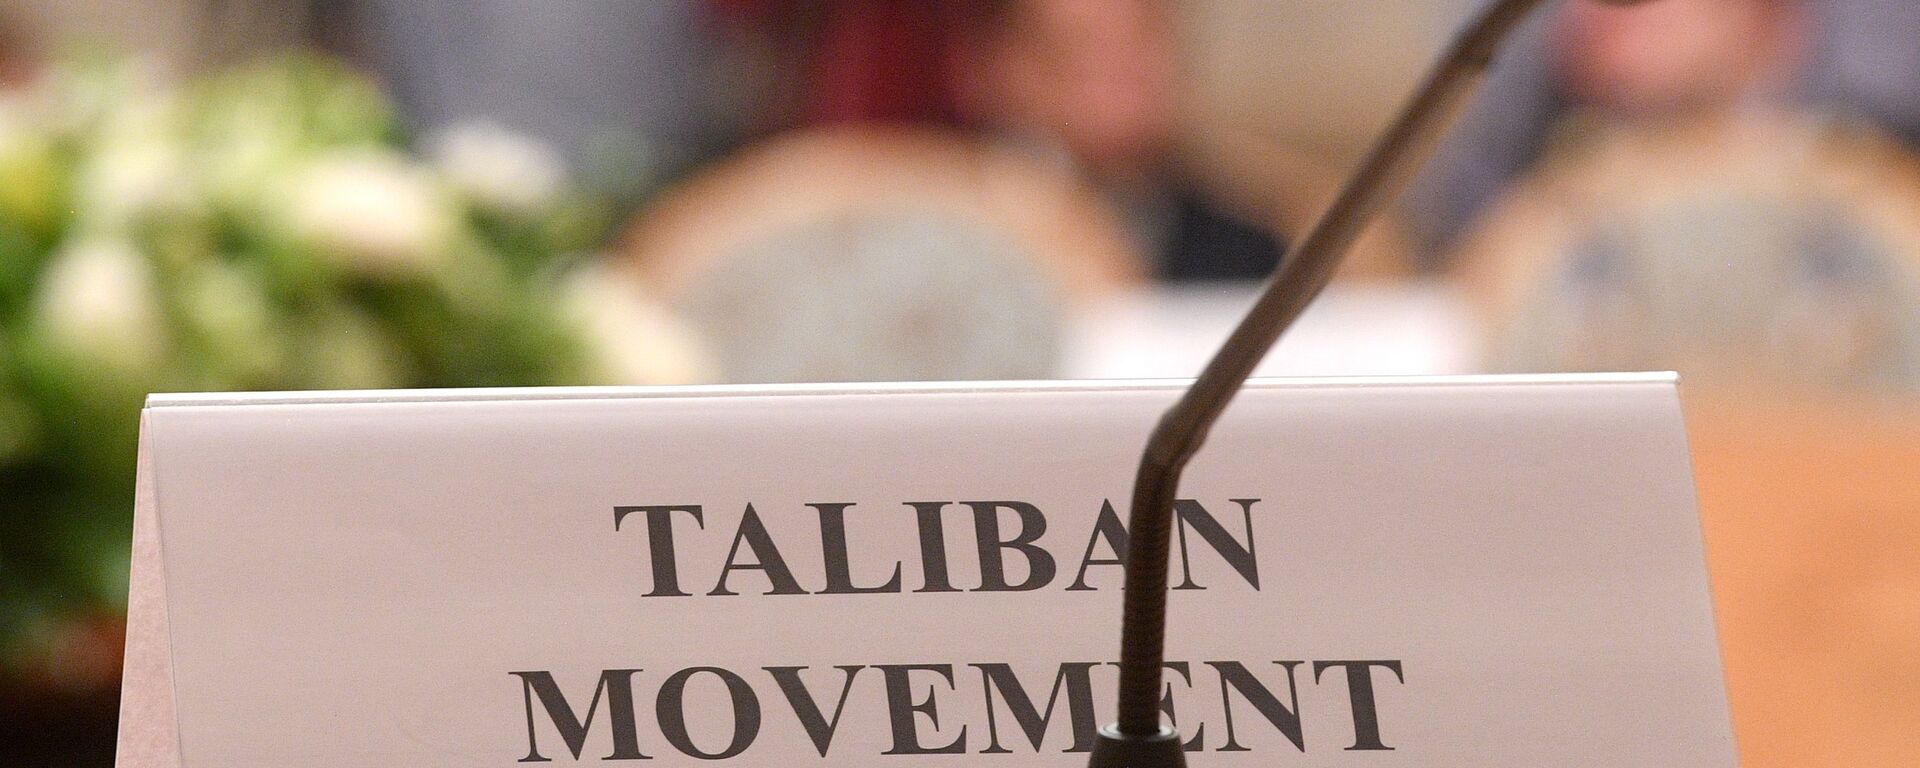 Табличка на столе представителей движения Талибан  - Sputnik Узбекистан, 1920, 28.01.2021